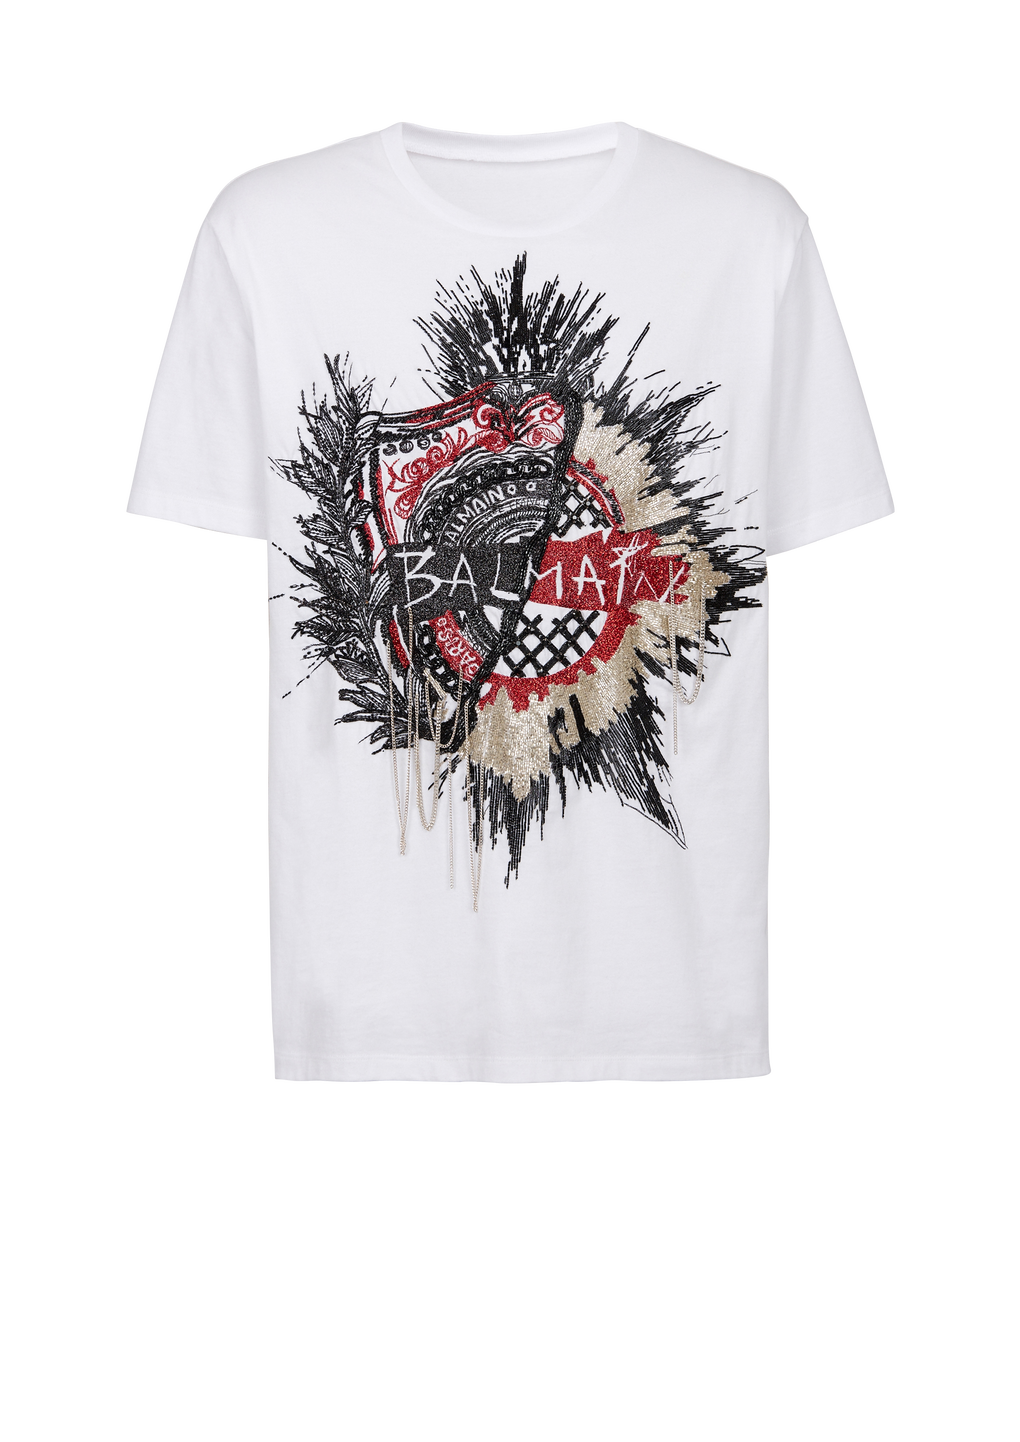 T-shirt oversize in cotone con logo Balmain ricamato, bianco, hi-res